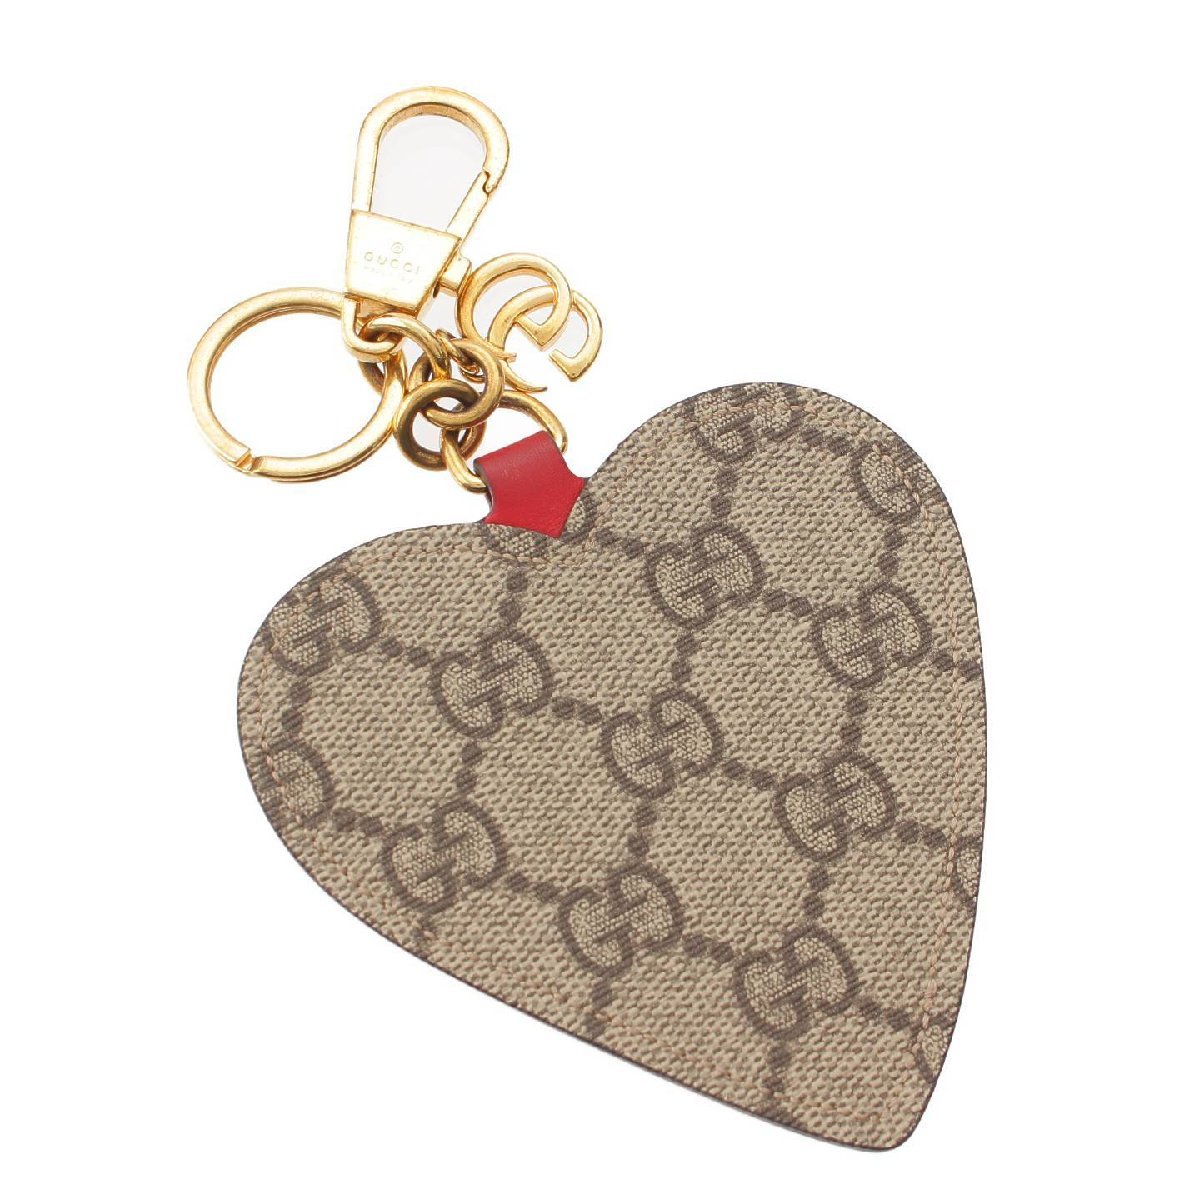 [ Gucci ]Gucci GGs шкив m вышивка цветок в форме сердечка брелок для ключа сумка очарование розовый [ б/у ][ стандартный товар гарантия ]201599